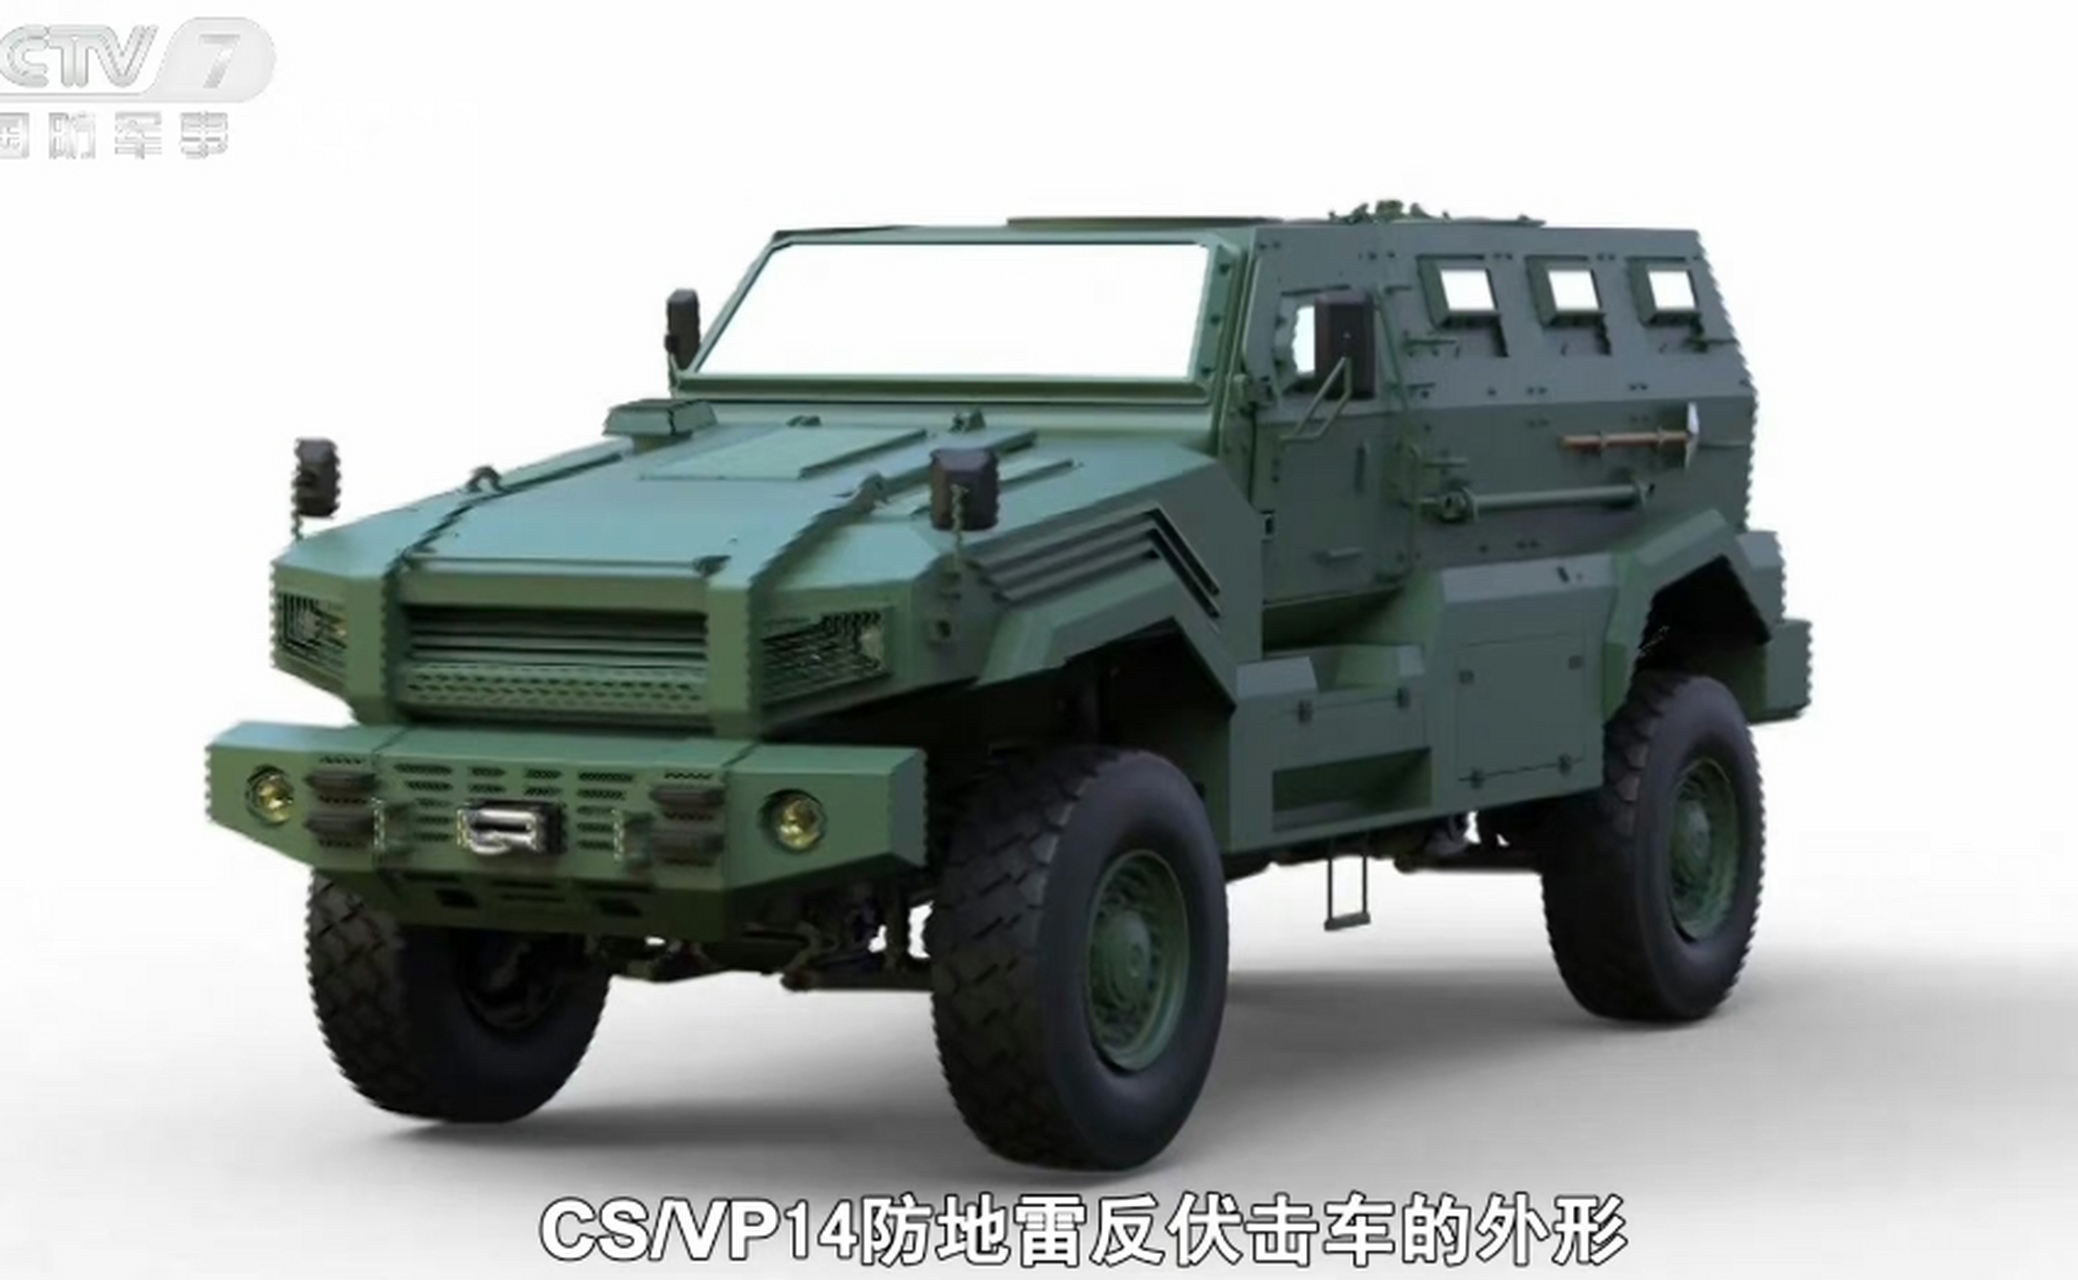 国产中国兵器装备集团长安望江工业研发制造的cs/vp14型防地雷反伏 